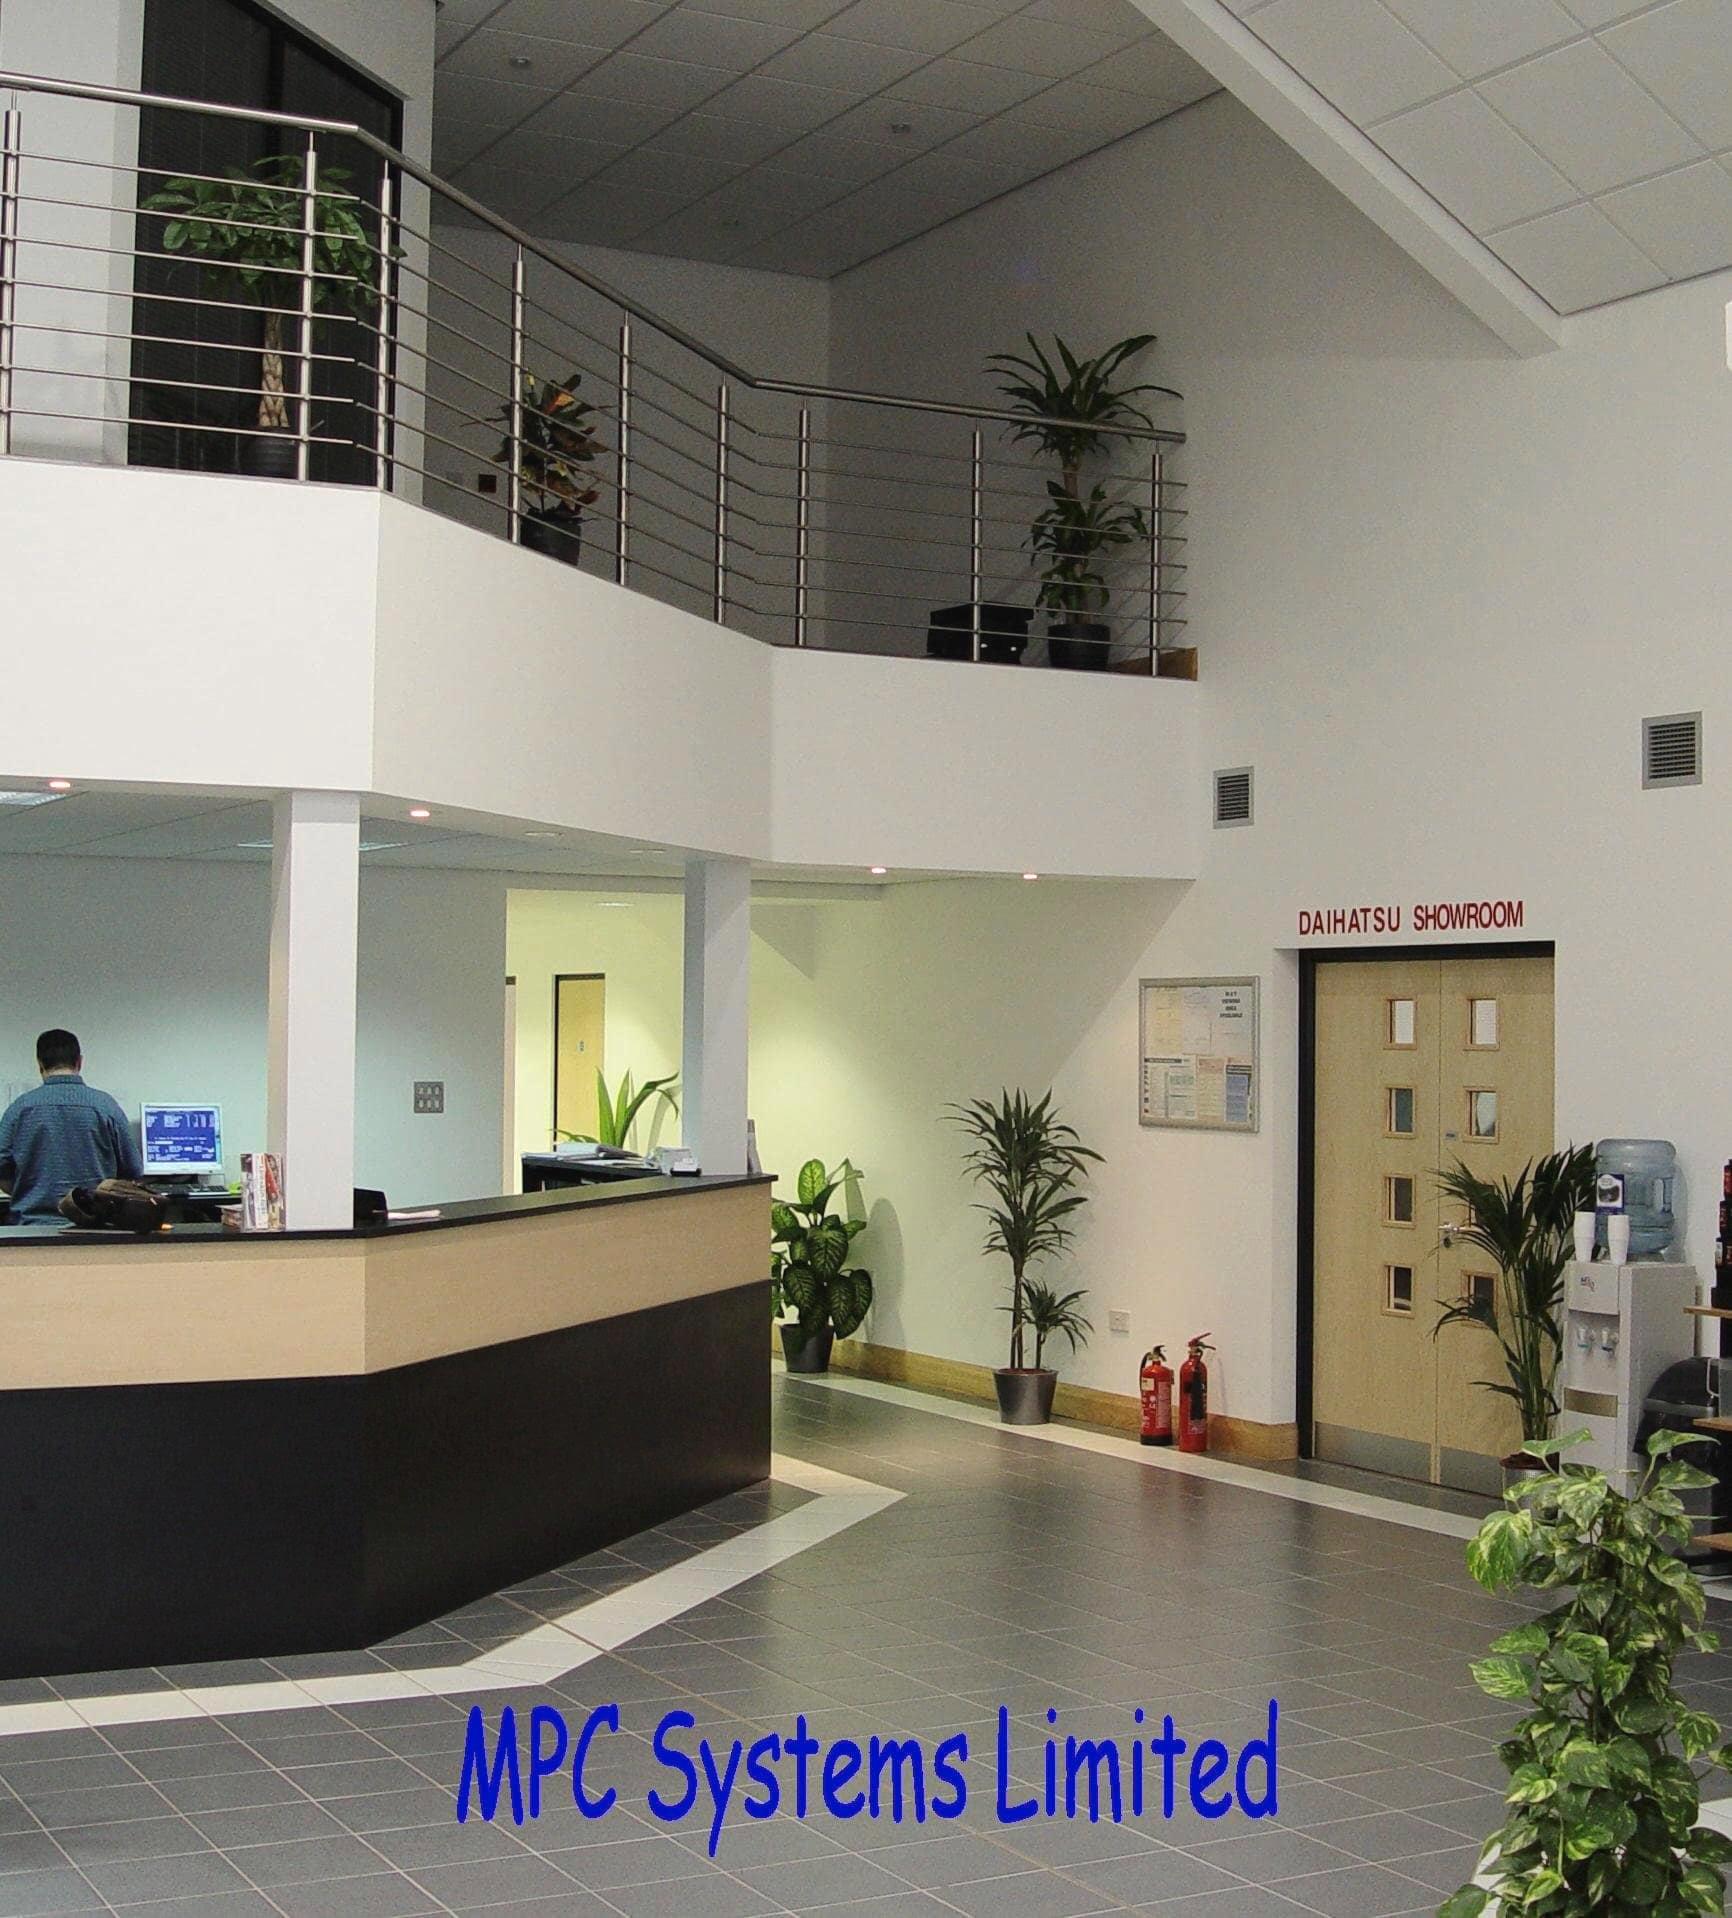 Images M P C Systems Ltd